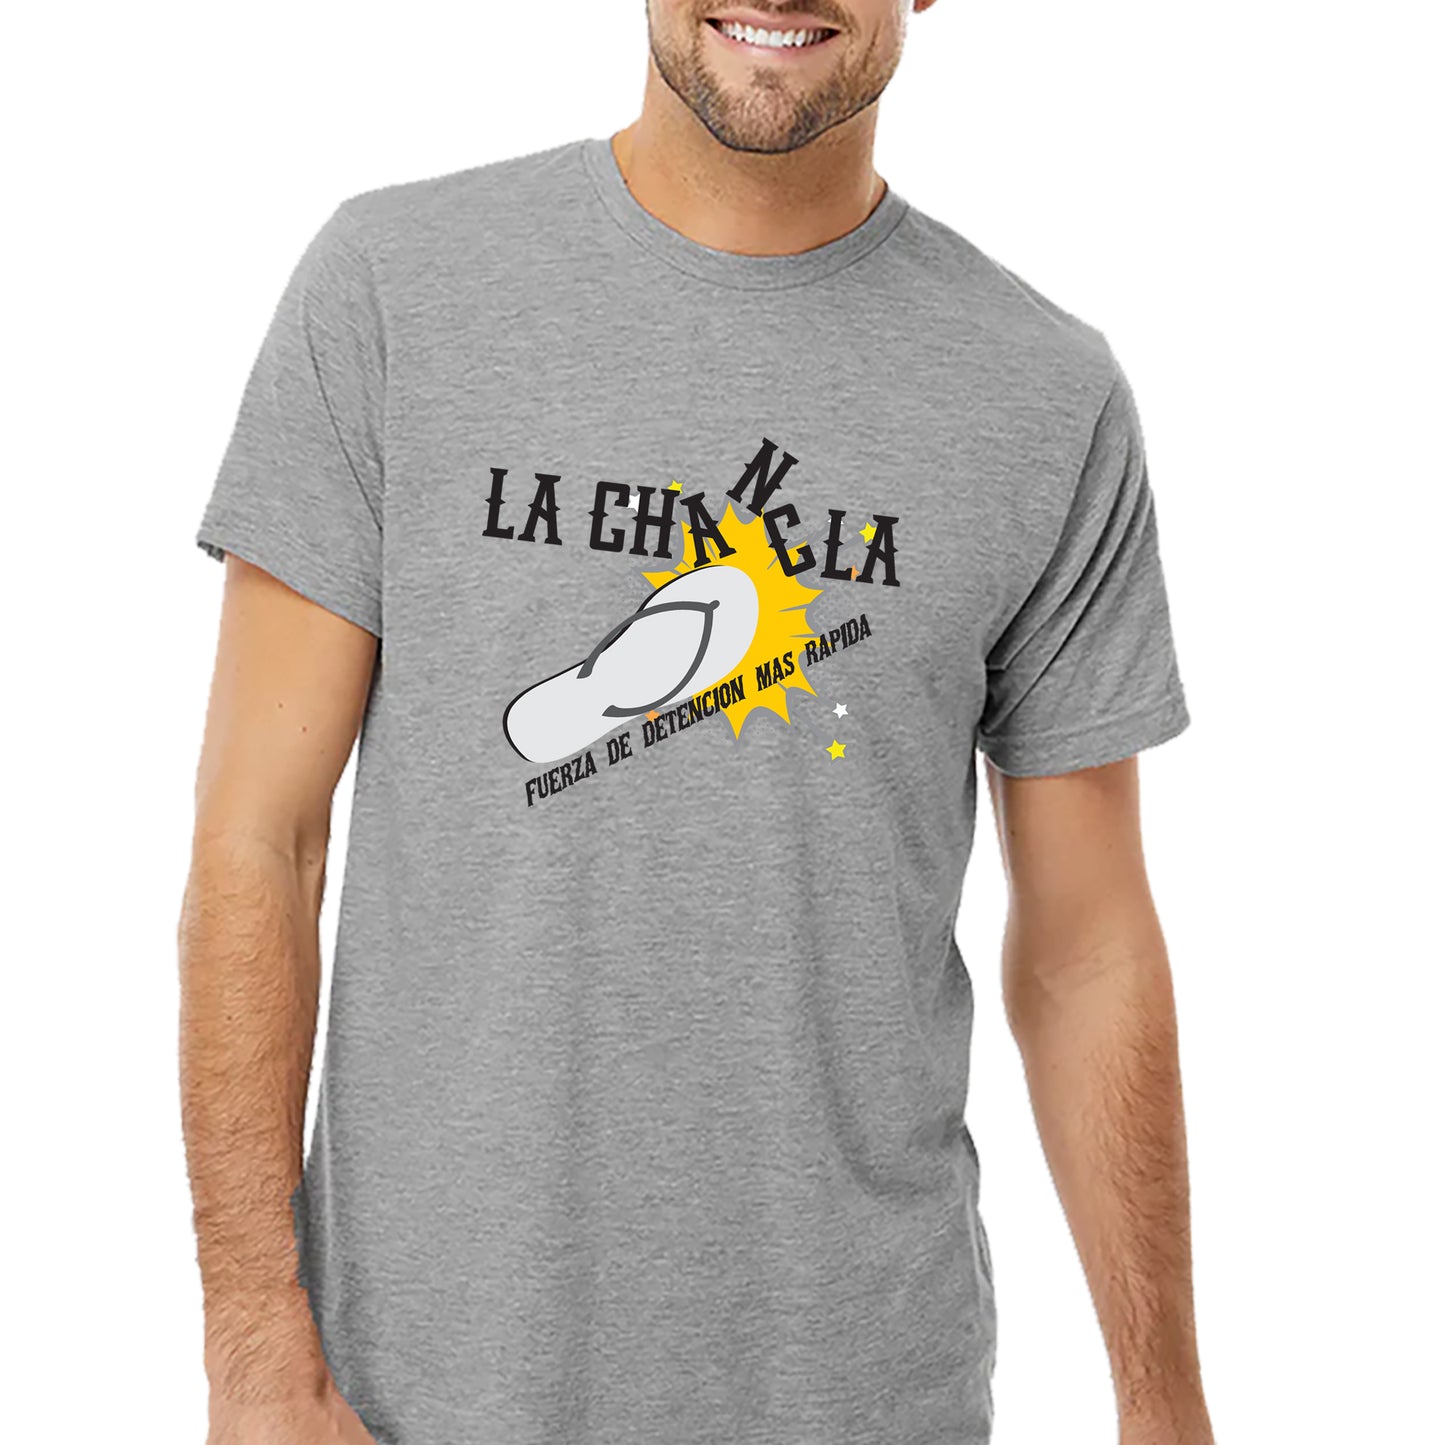 La Chancla T-shirt